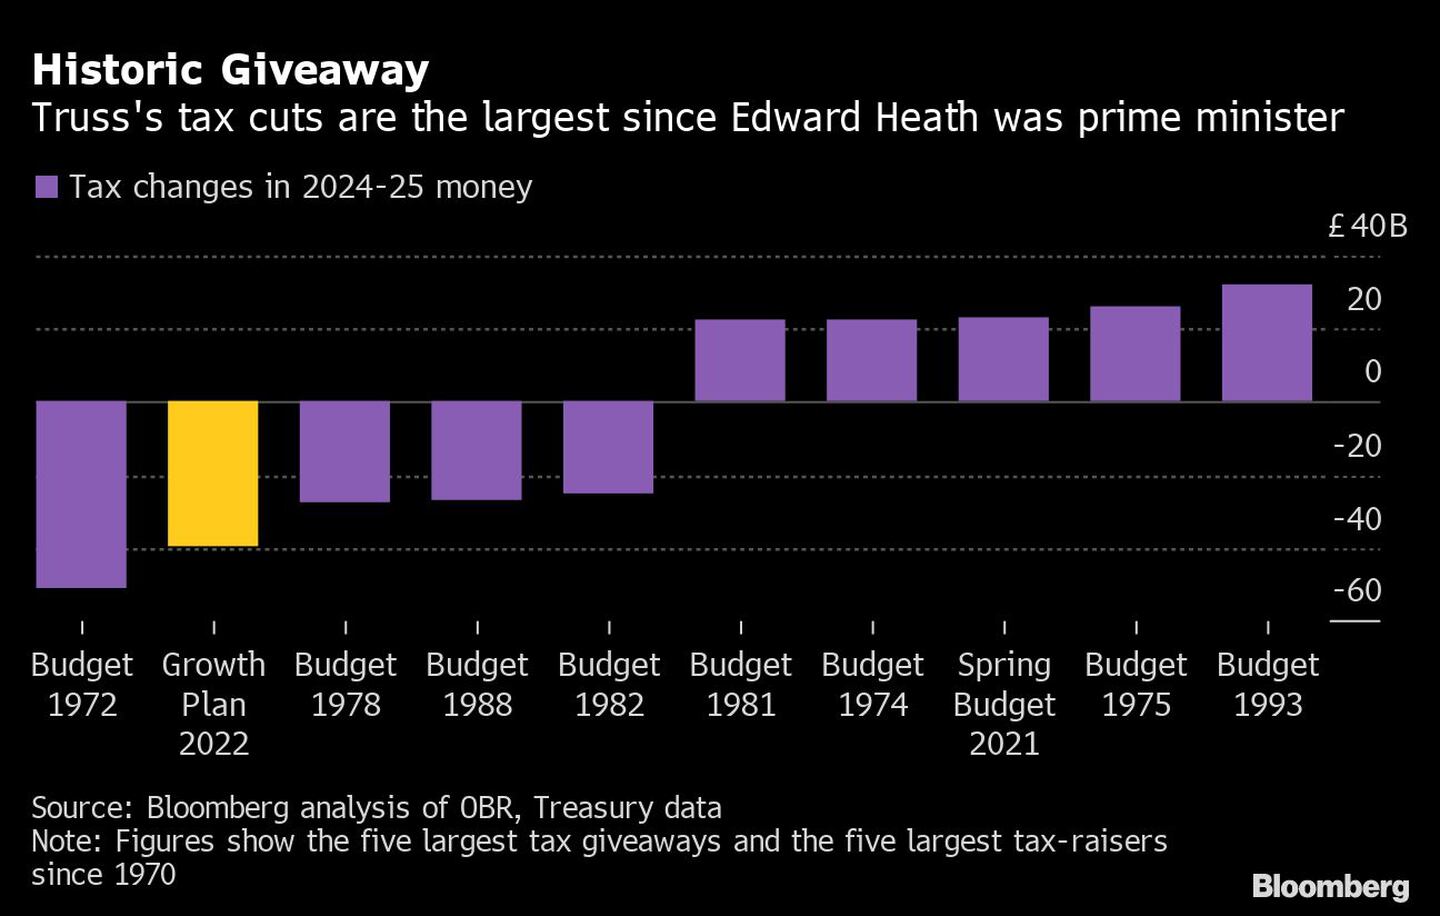 Regalo histórico | Los recortes fiscales de Truss son los mayores desde que Edward Heath era primer ministro
dfd